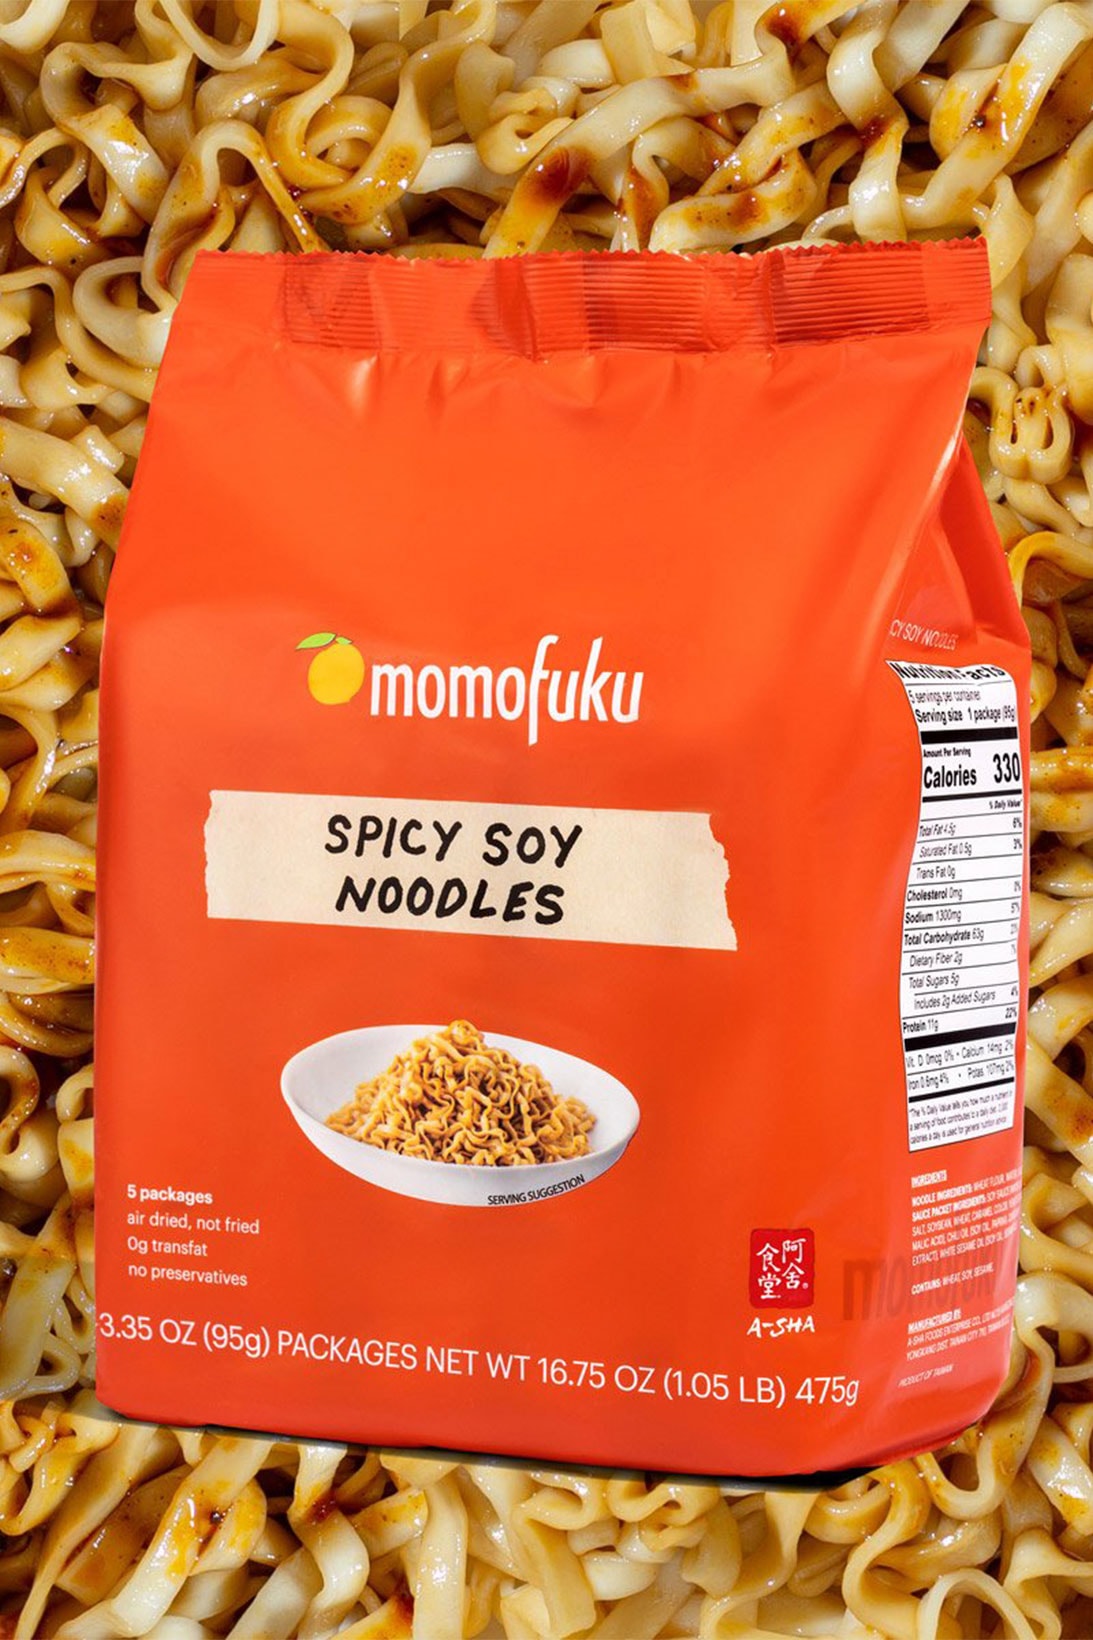 Momofuku Noodles Soy Scallion Chili Wavy Tingly Spicy David Chang Food 